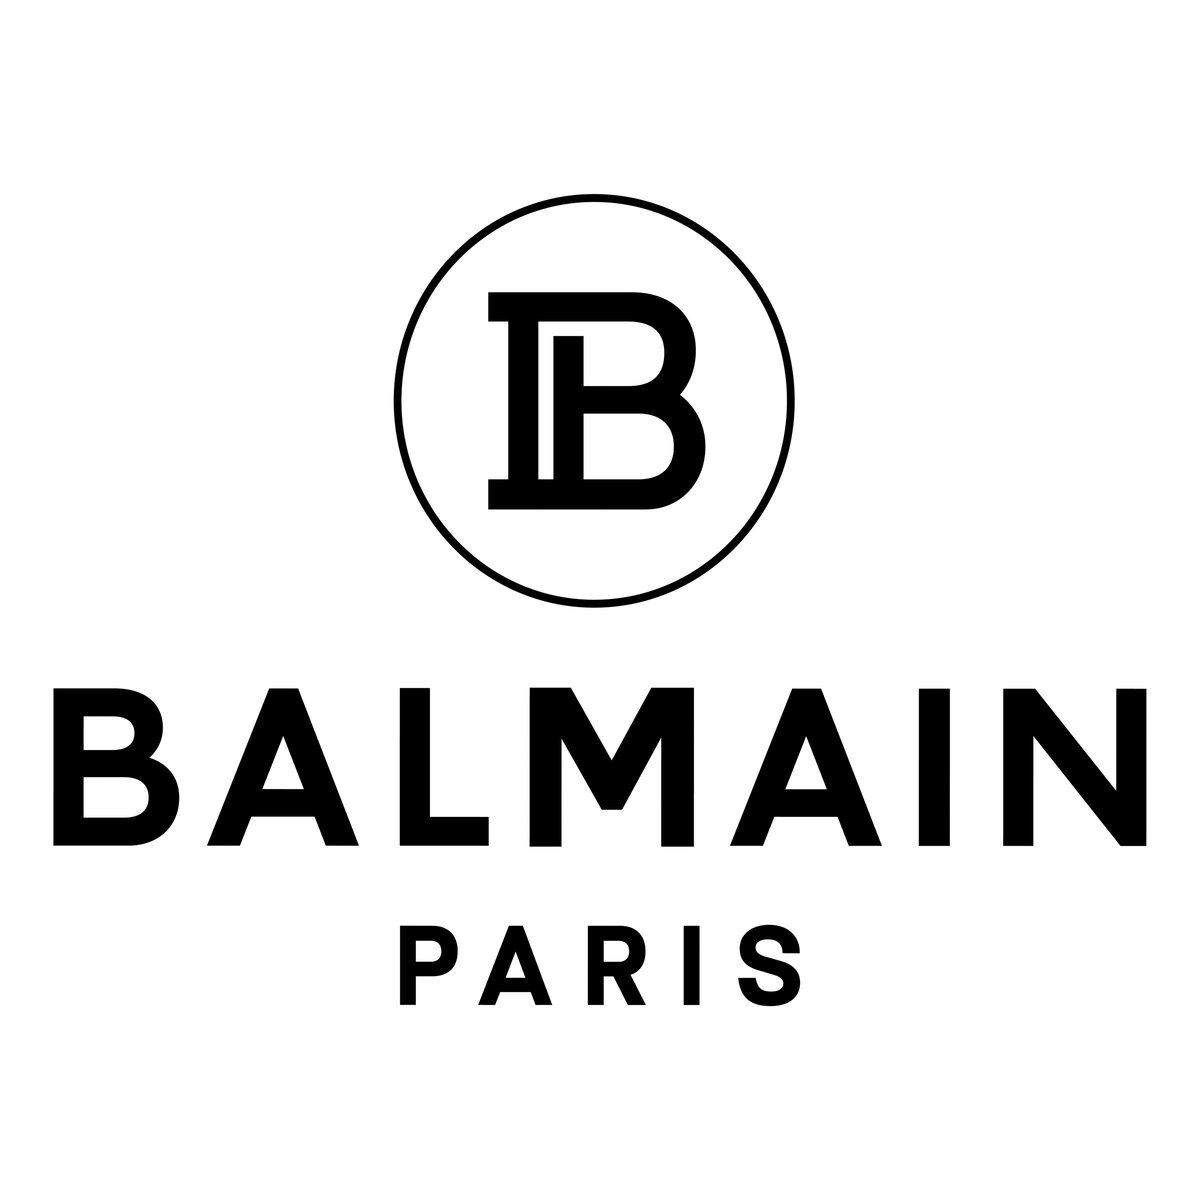 バルマンがロゴ刷新、創業者とパリにオマージュを捧げたモノグラムの